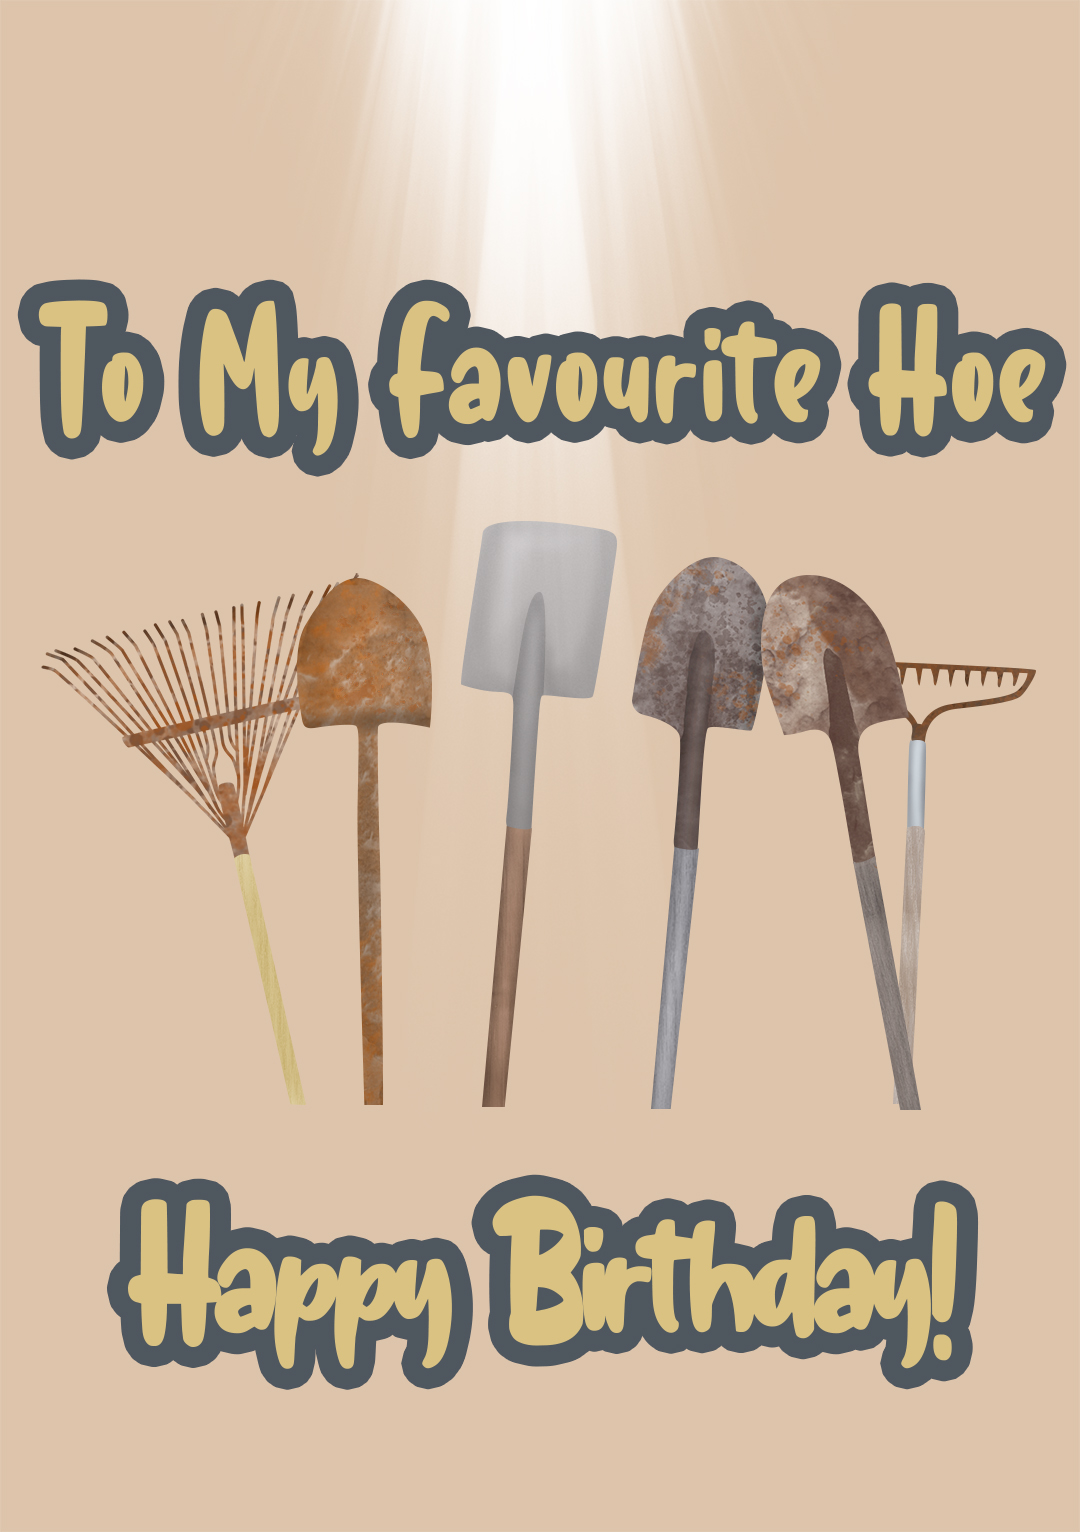 My Favourite Hoe...Happy Birthday!